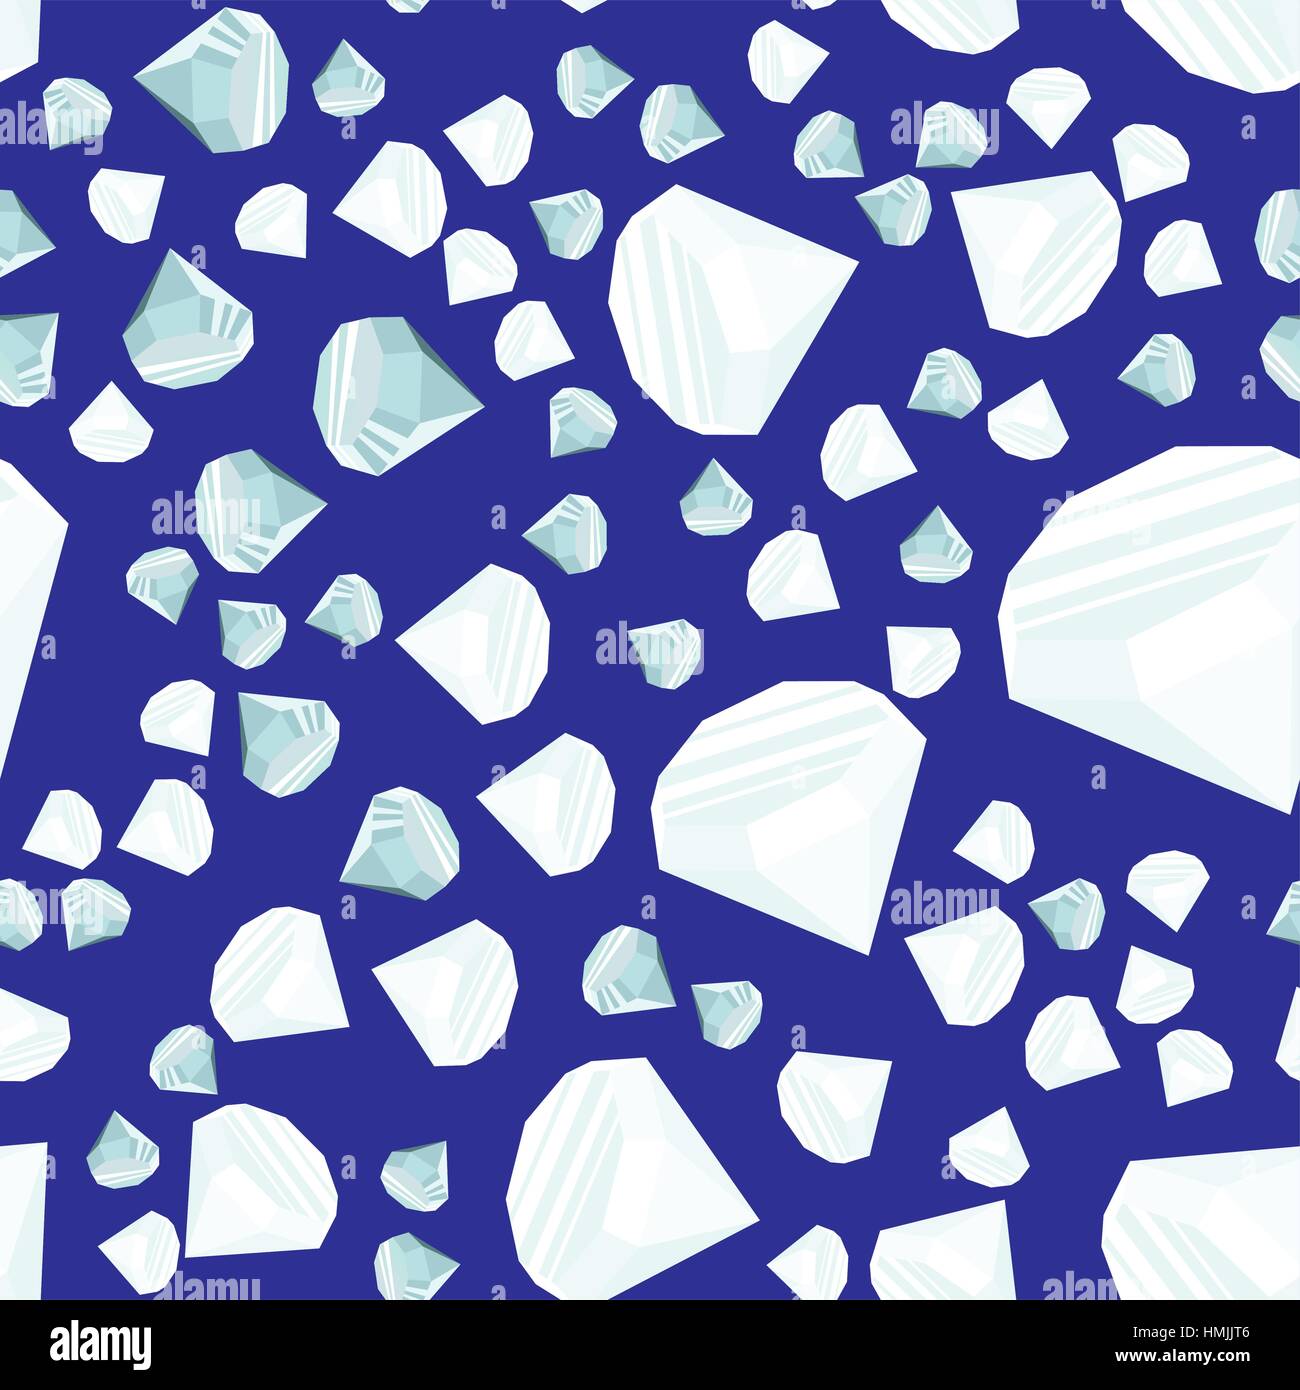 Diamanti casualmente posizionati su sfondo blu seamless pattern. Crystal clear gioielli brillante ripetendo la texture. EPS8 illustrazione vettoriale. Illustrazione Vettoriale